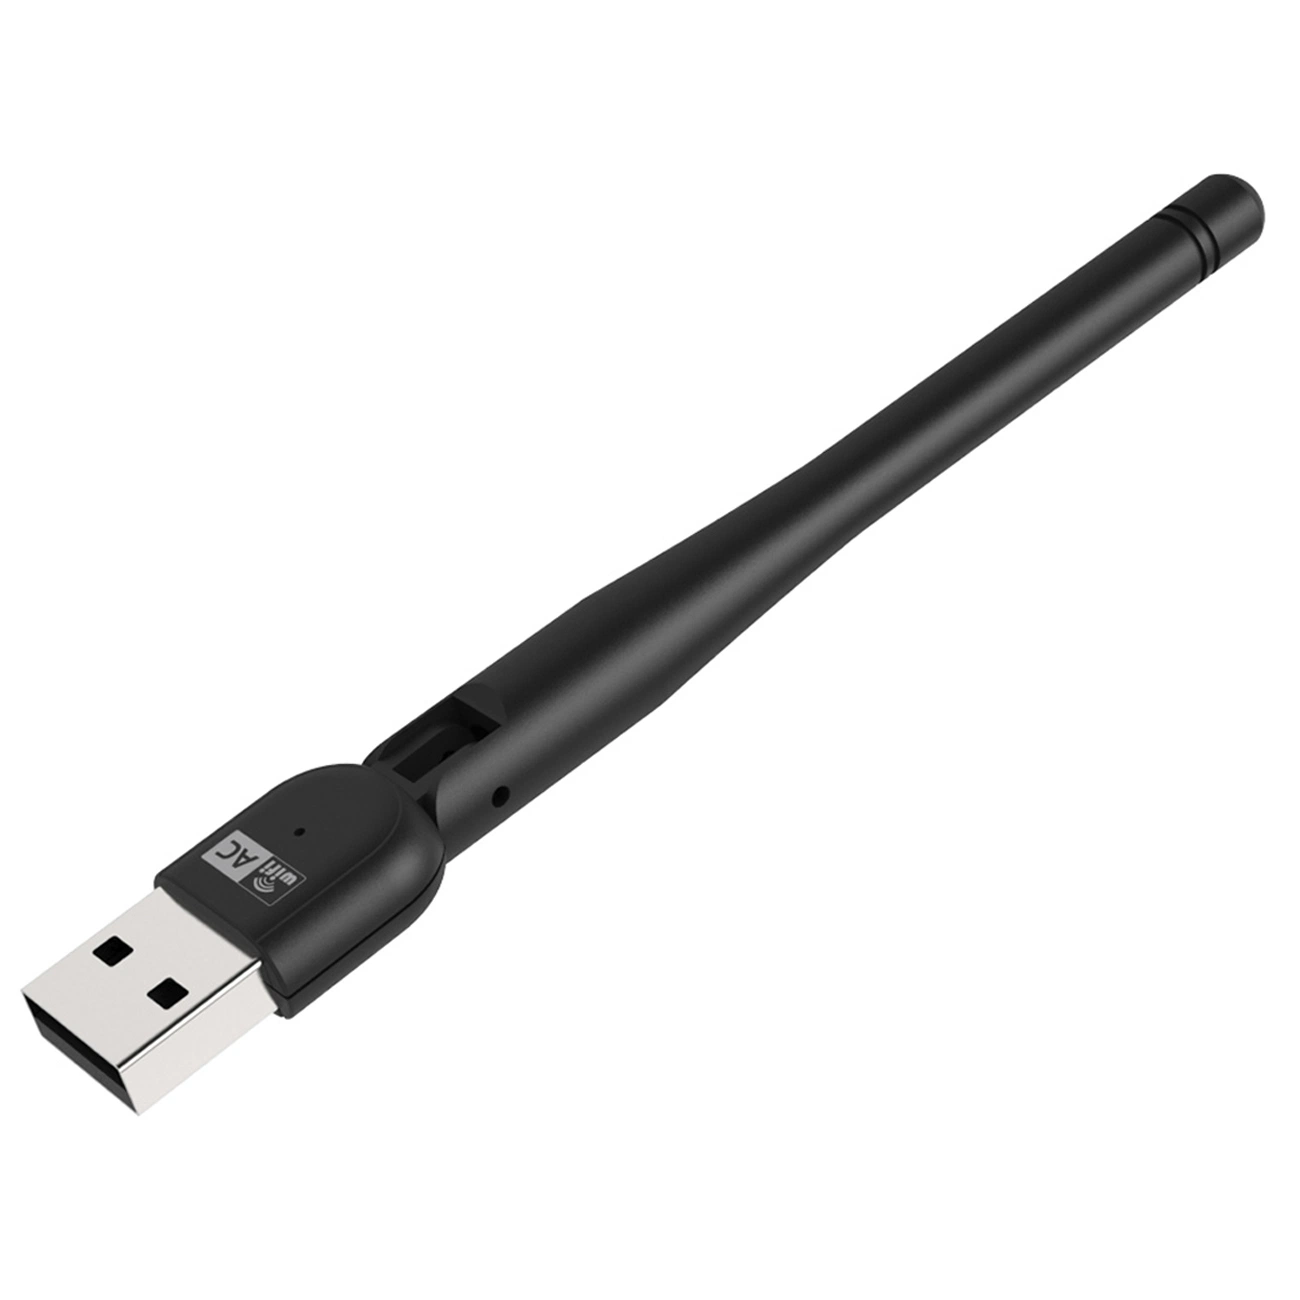 Wn691AE AC600 de doble banda Adaptador USB USB 2.0 de la tarjeta de red